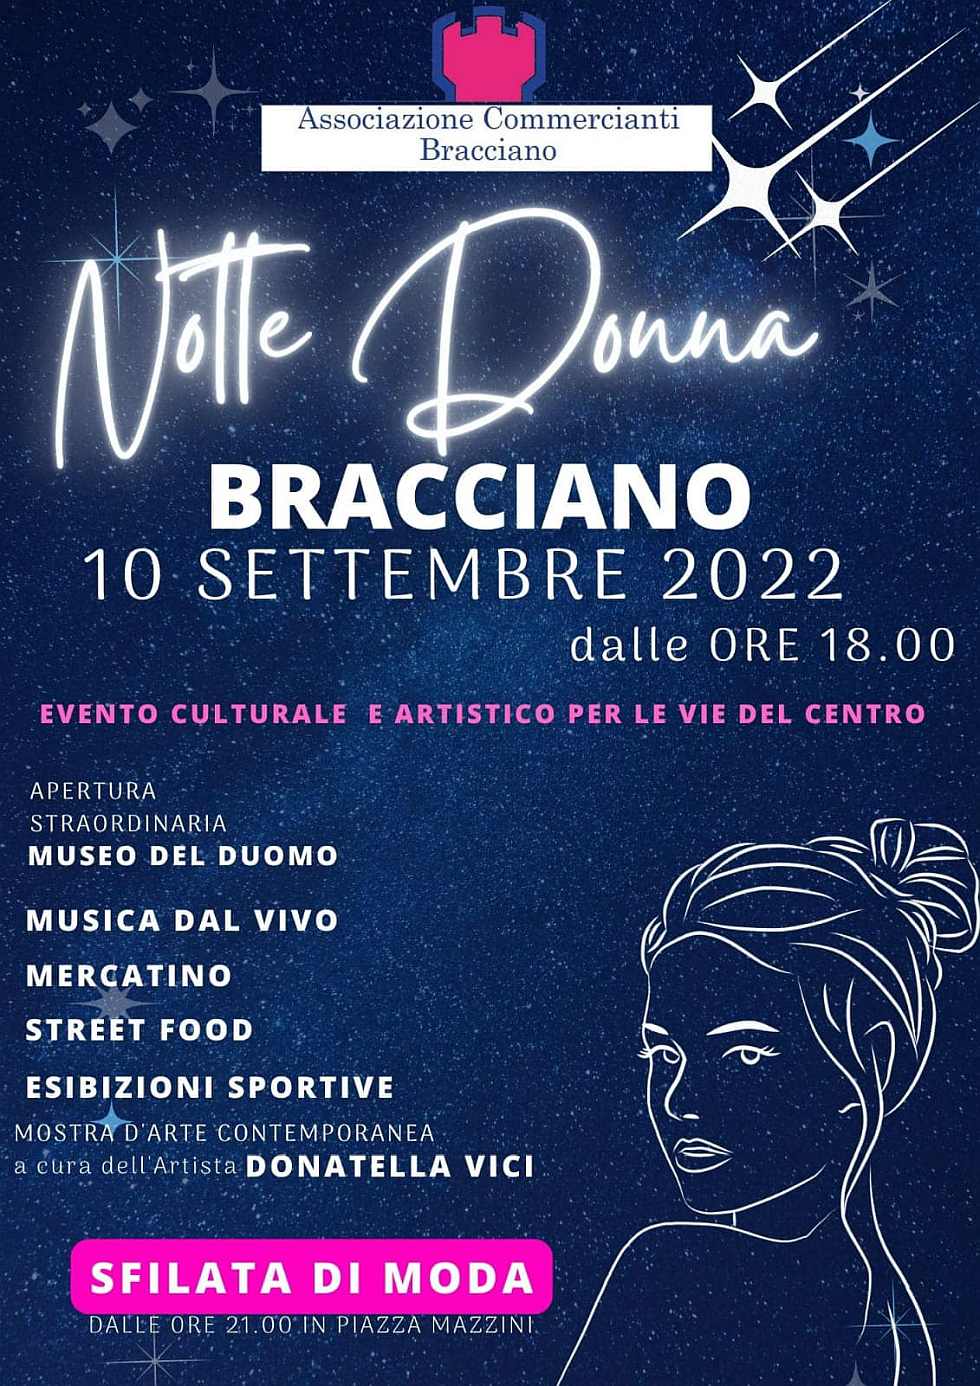 Bracciano (RM)
"Notte Donna"
10 Settembre 2022 
